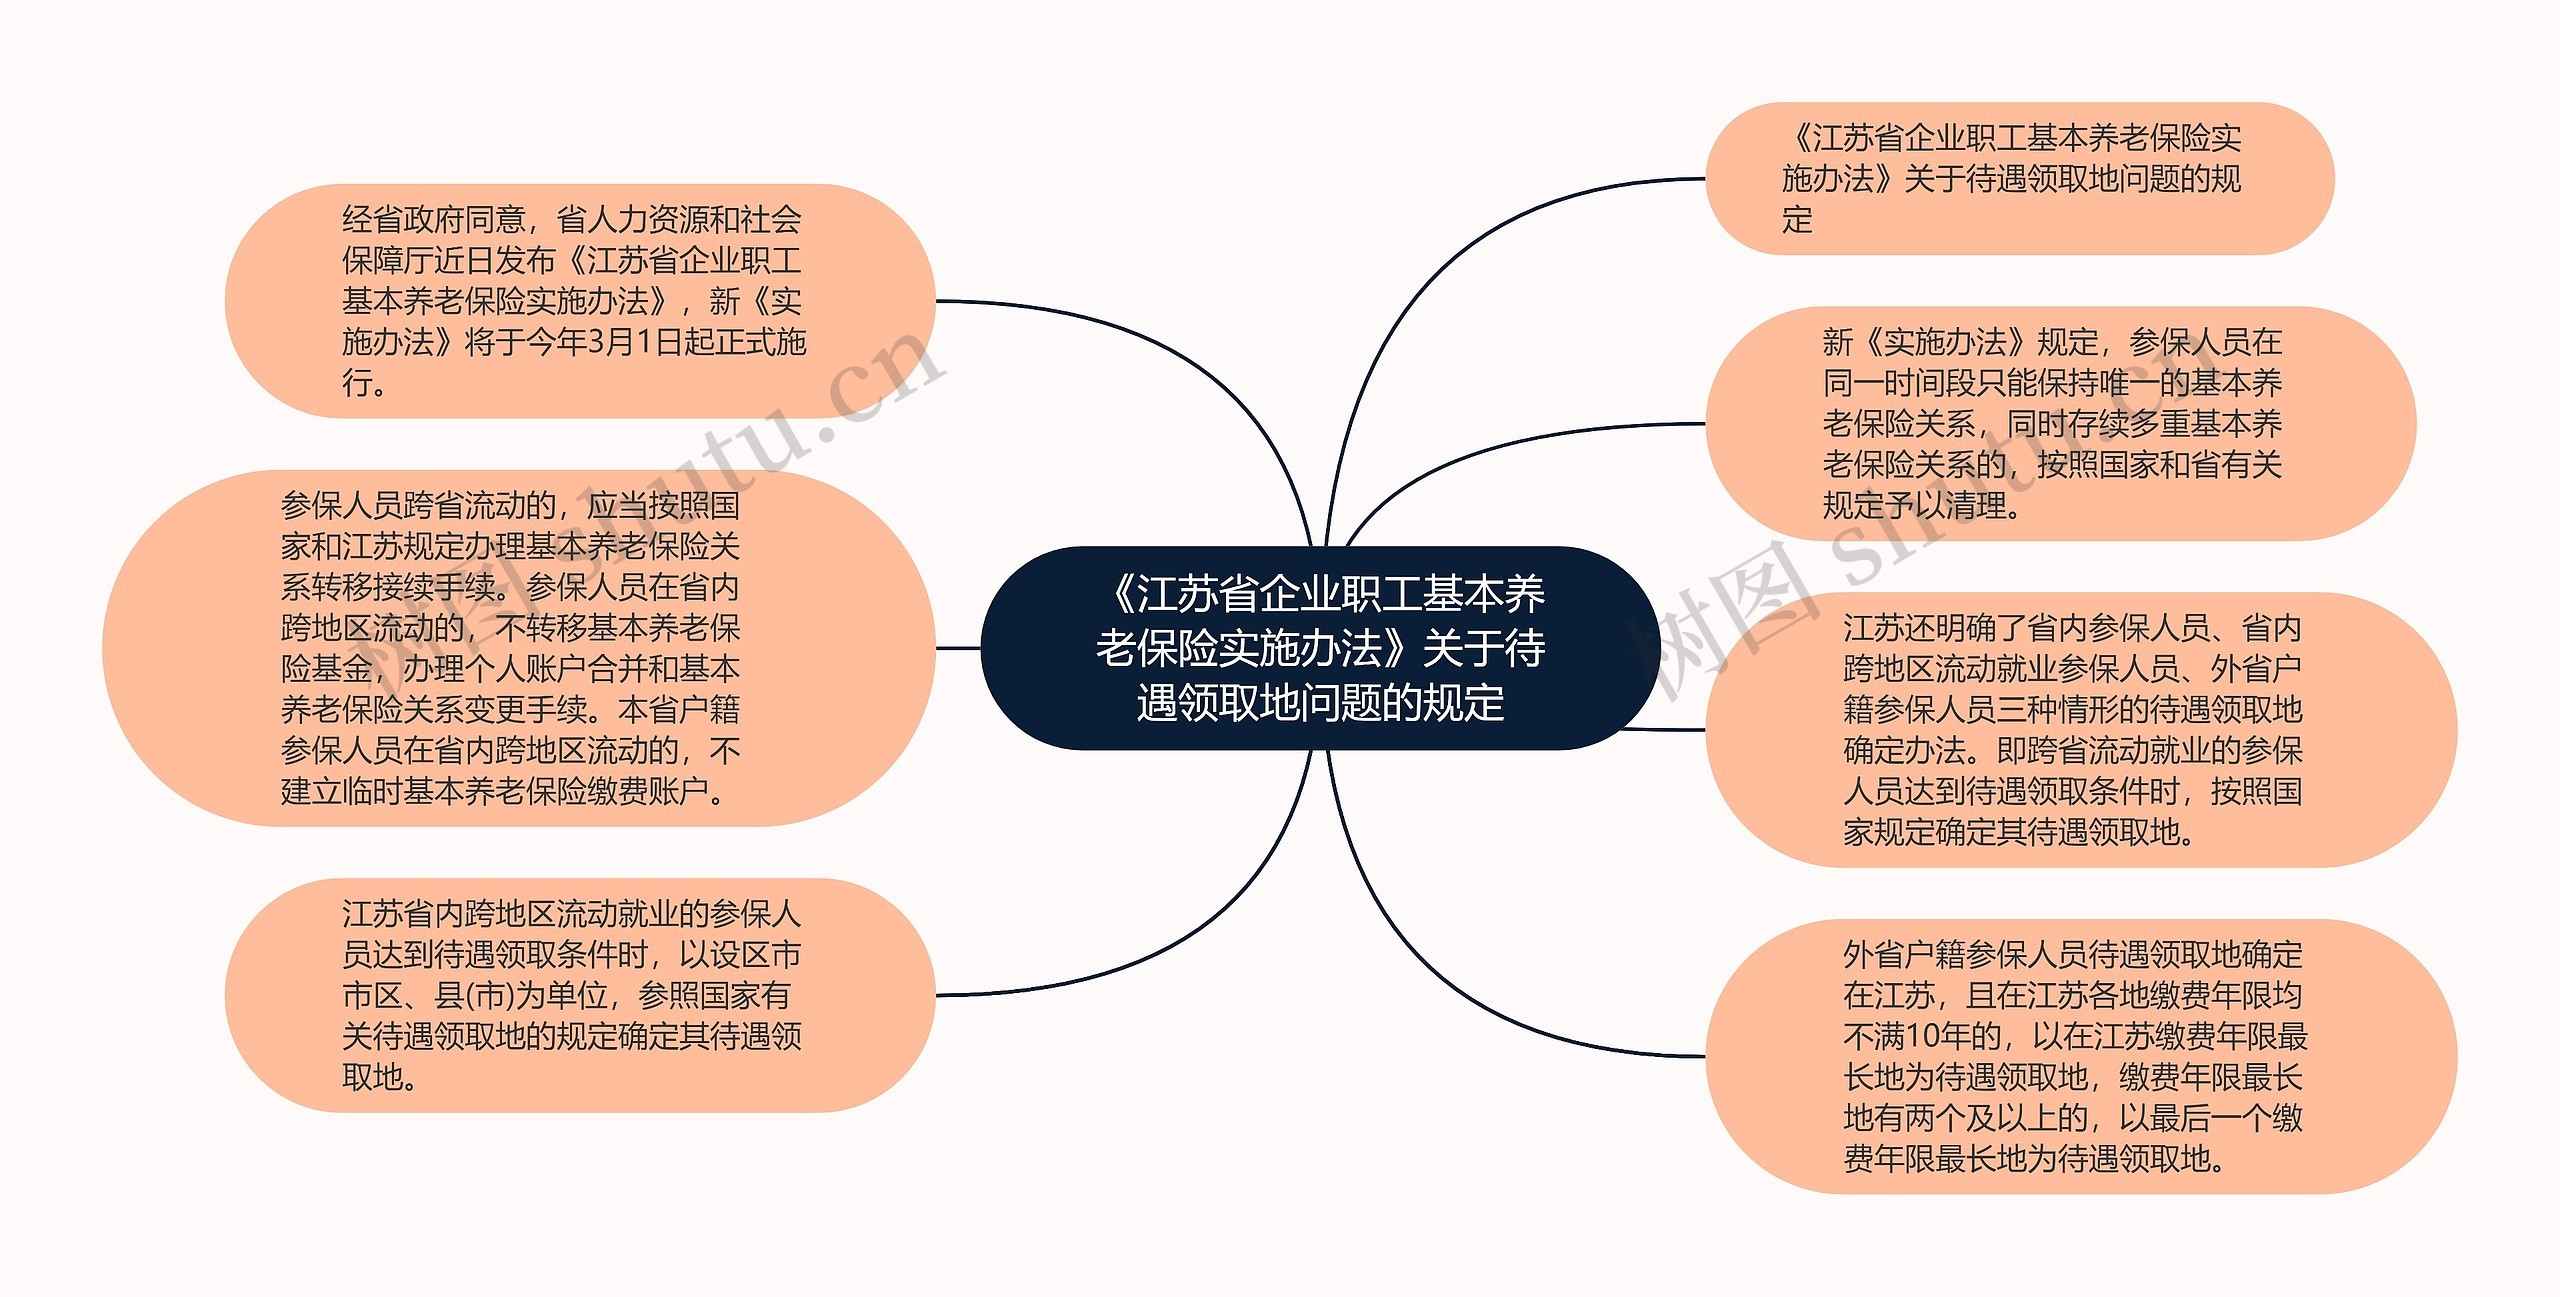 《江苏省企业职工基本养老保险实施办法》关于待遇领取地问题的规定